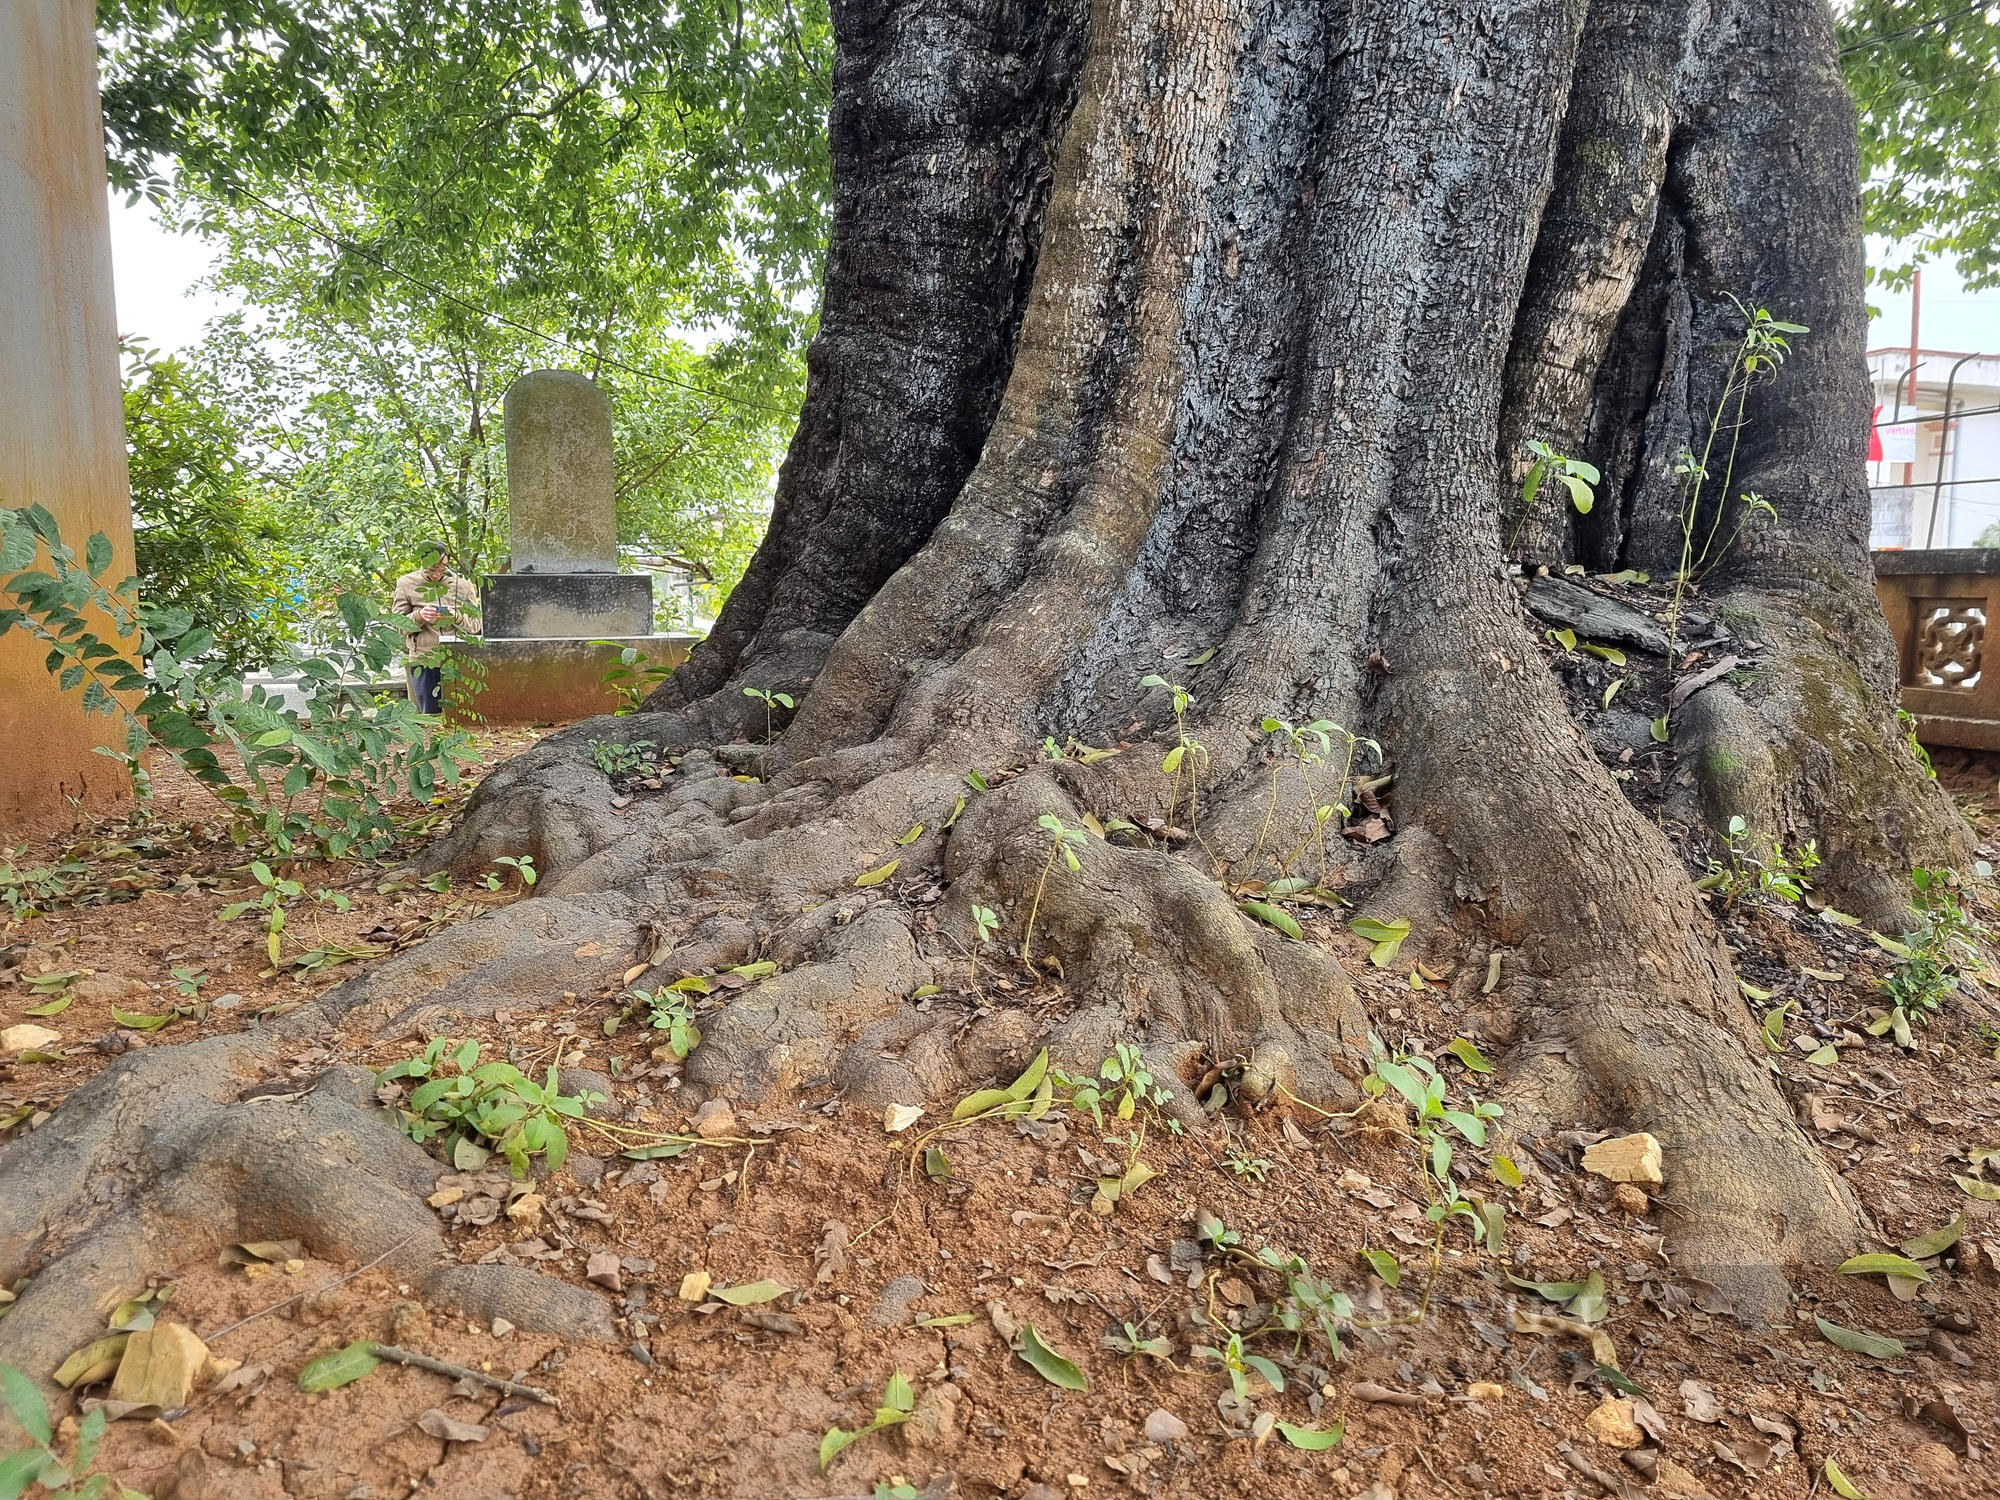 Cận cảnh cây thị cổ hơn 700 năm với thân xù xì, cành lá xanh tốt ở Ninh Bình - Ảnh 5.